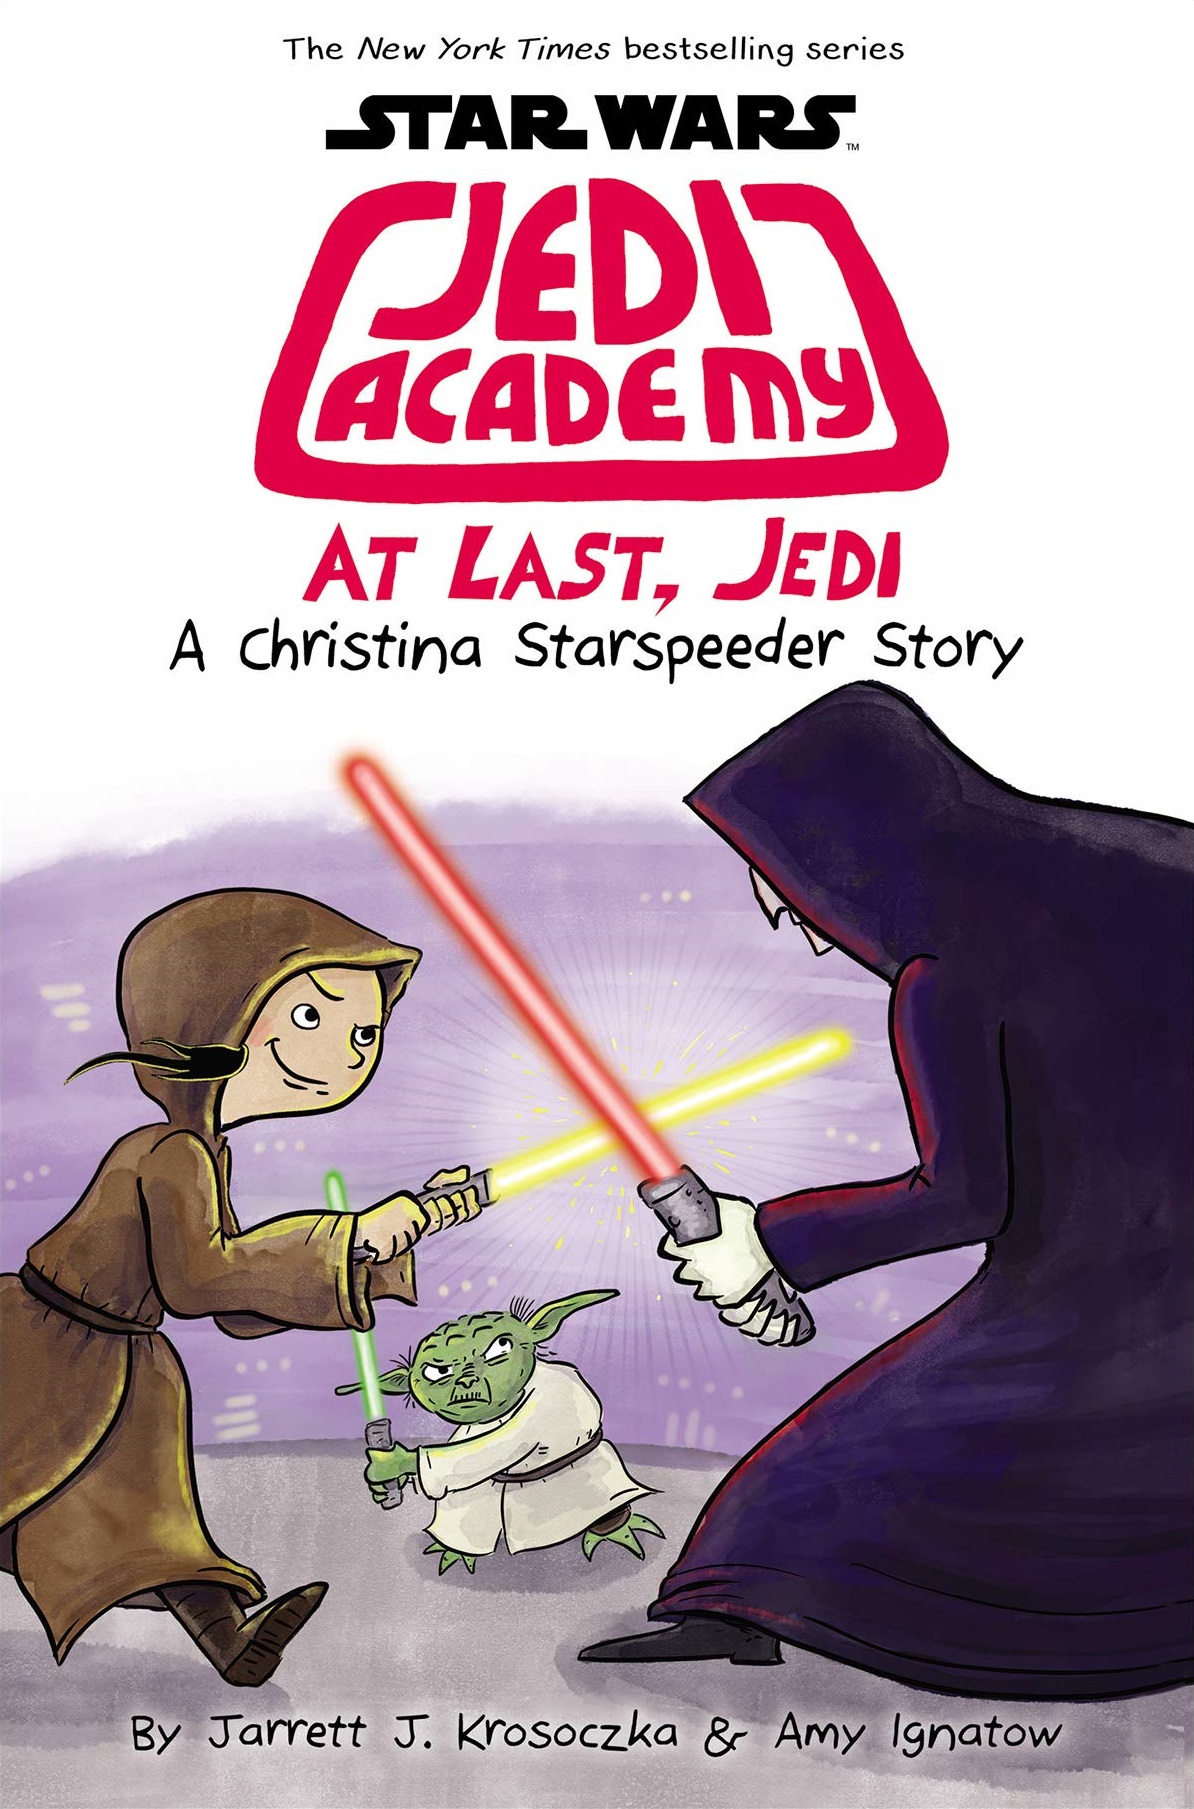 star wars jedi academy book 4